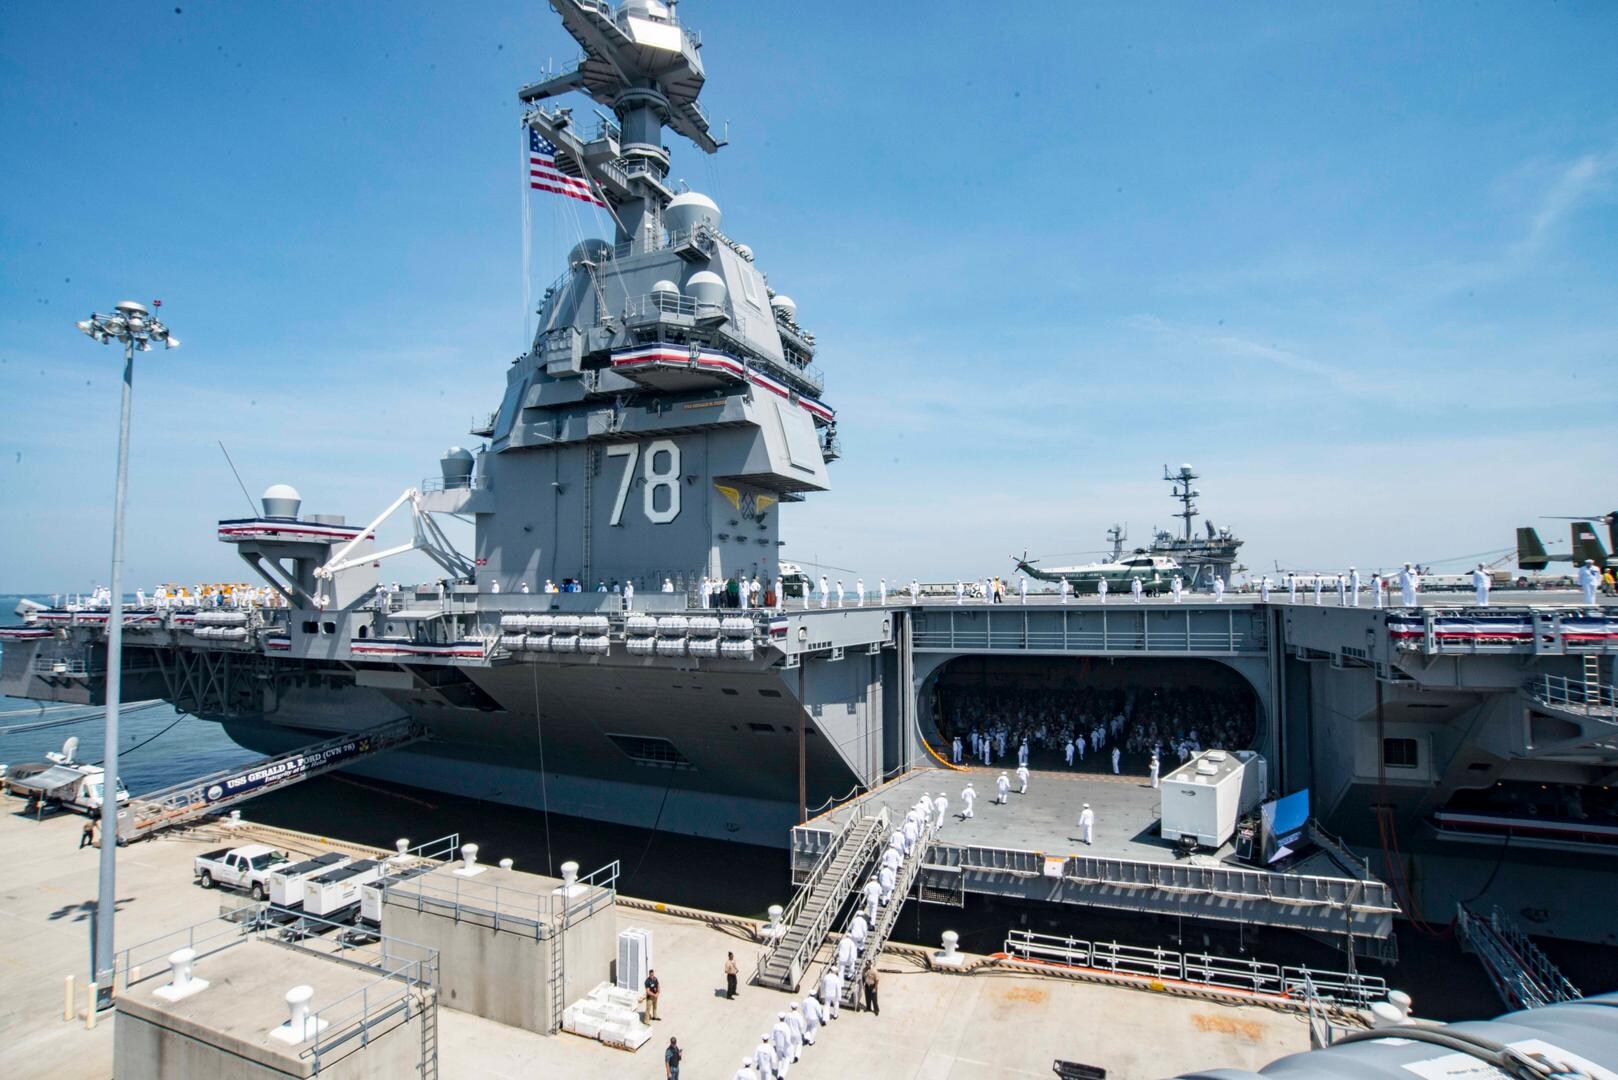 "Onze vijanden zullen beven van angst": Trump presenteert indrukwekkend oorlogsschip